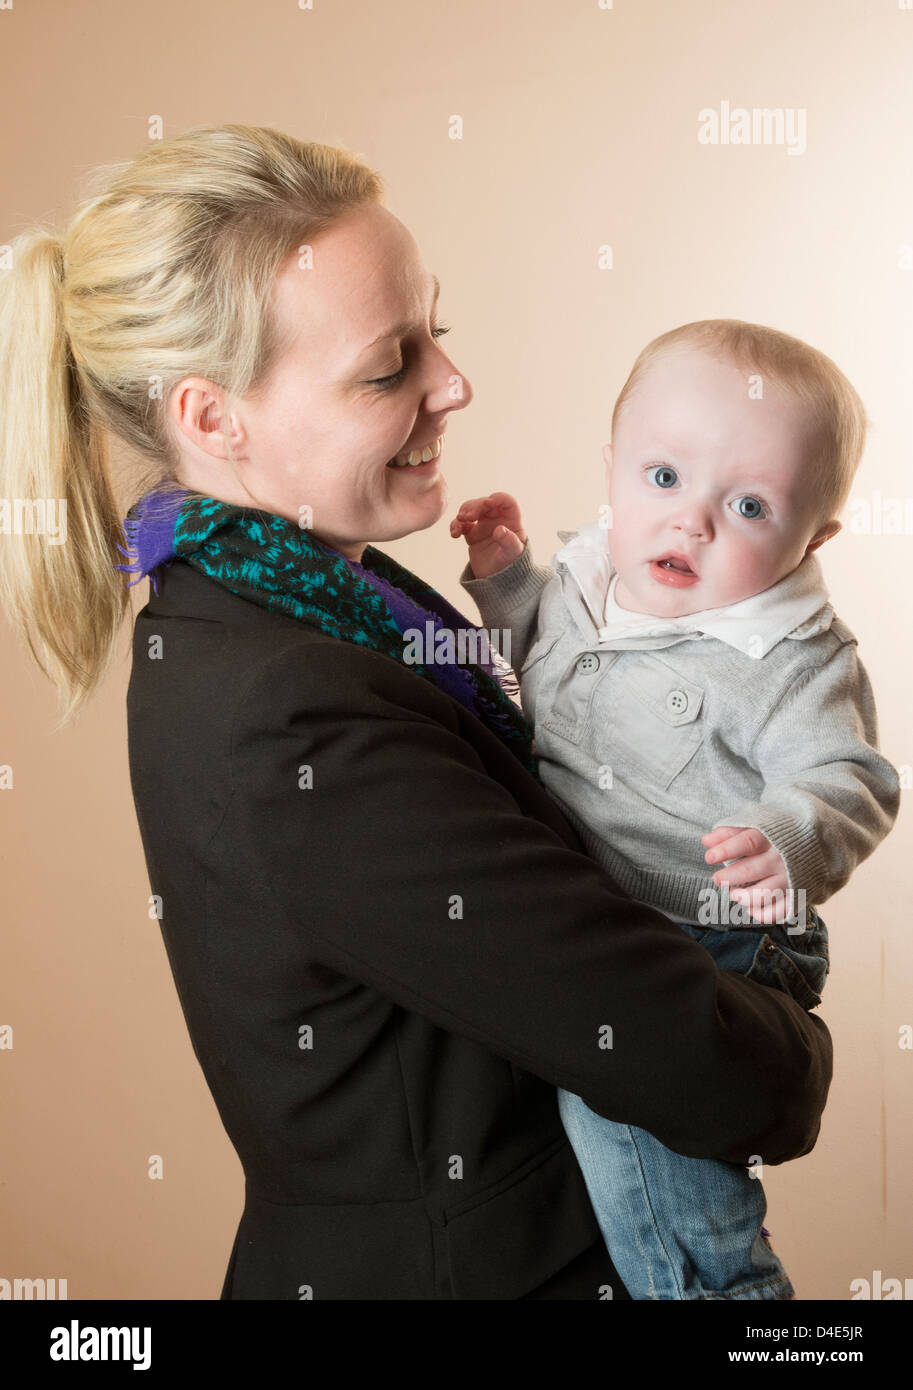 Junge Mutter hält ihr Baby junge 6 Monate alt Stockfoto